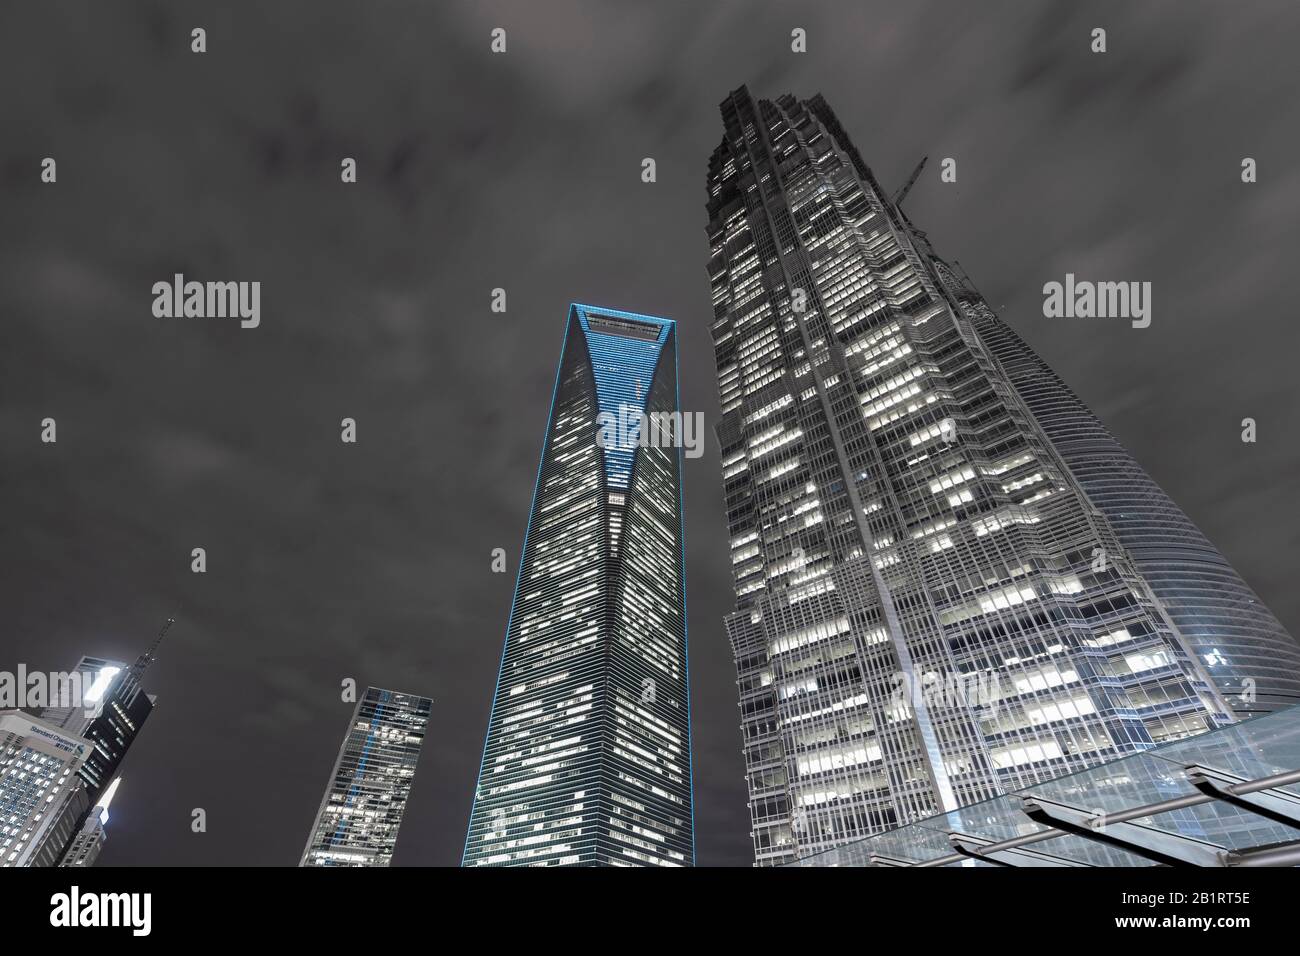 Shanghai World Financial Center SWFC, Jin Mao Tower, night shot, Lujiazui Financial District, Pudong, Shanghai, China Stock Photo